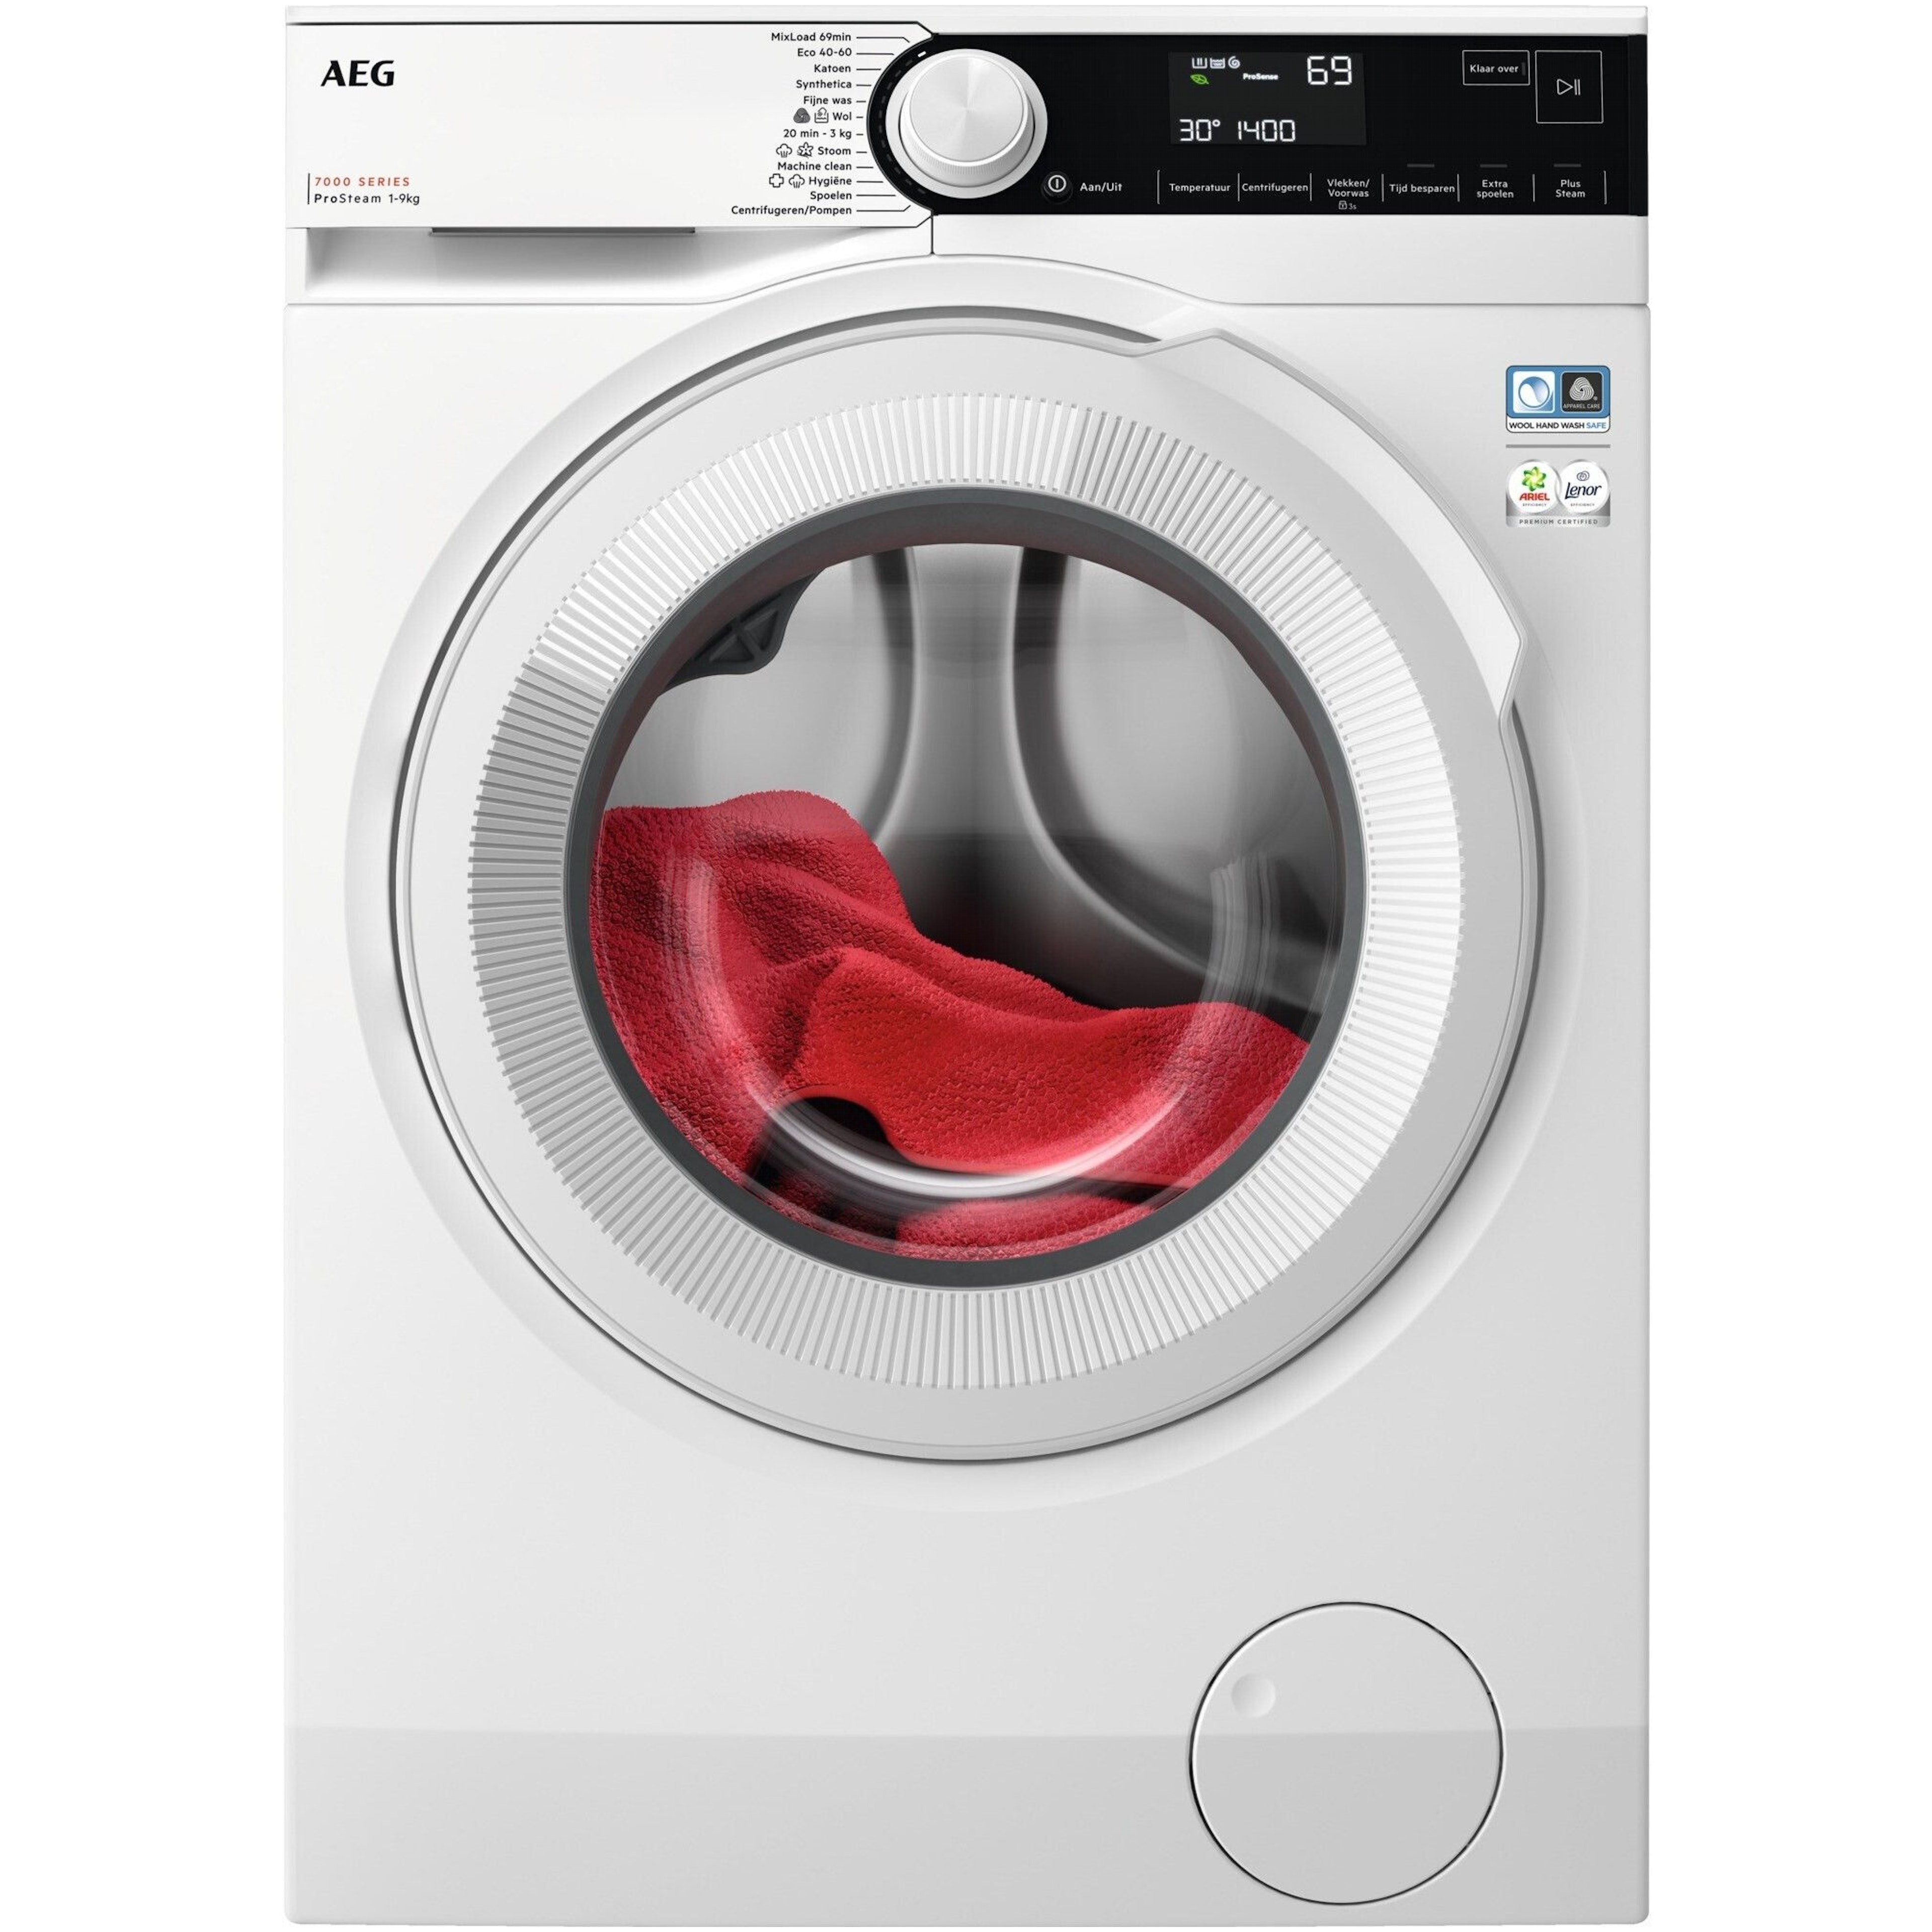 AEG LR75942 wasmachine afbeelding 1